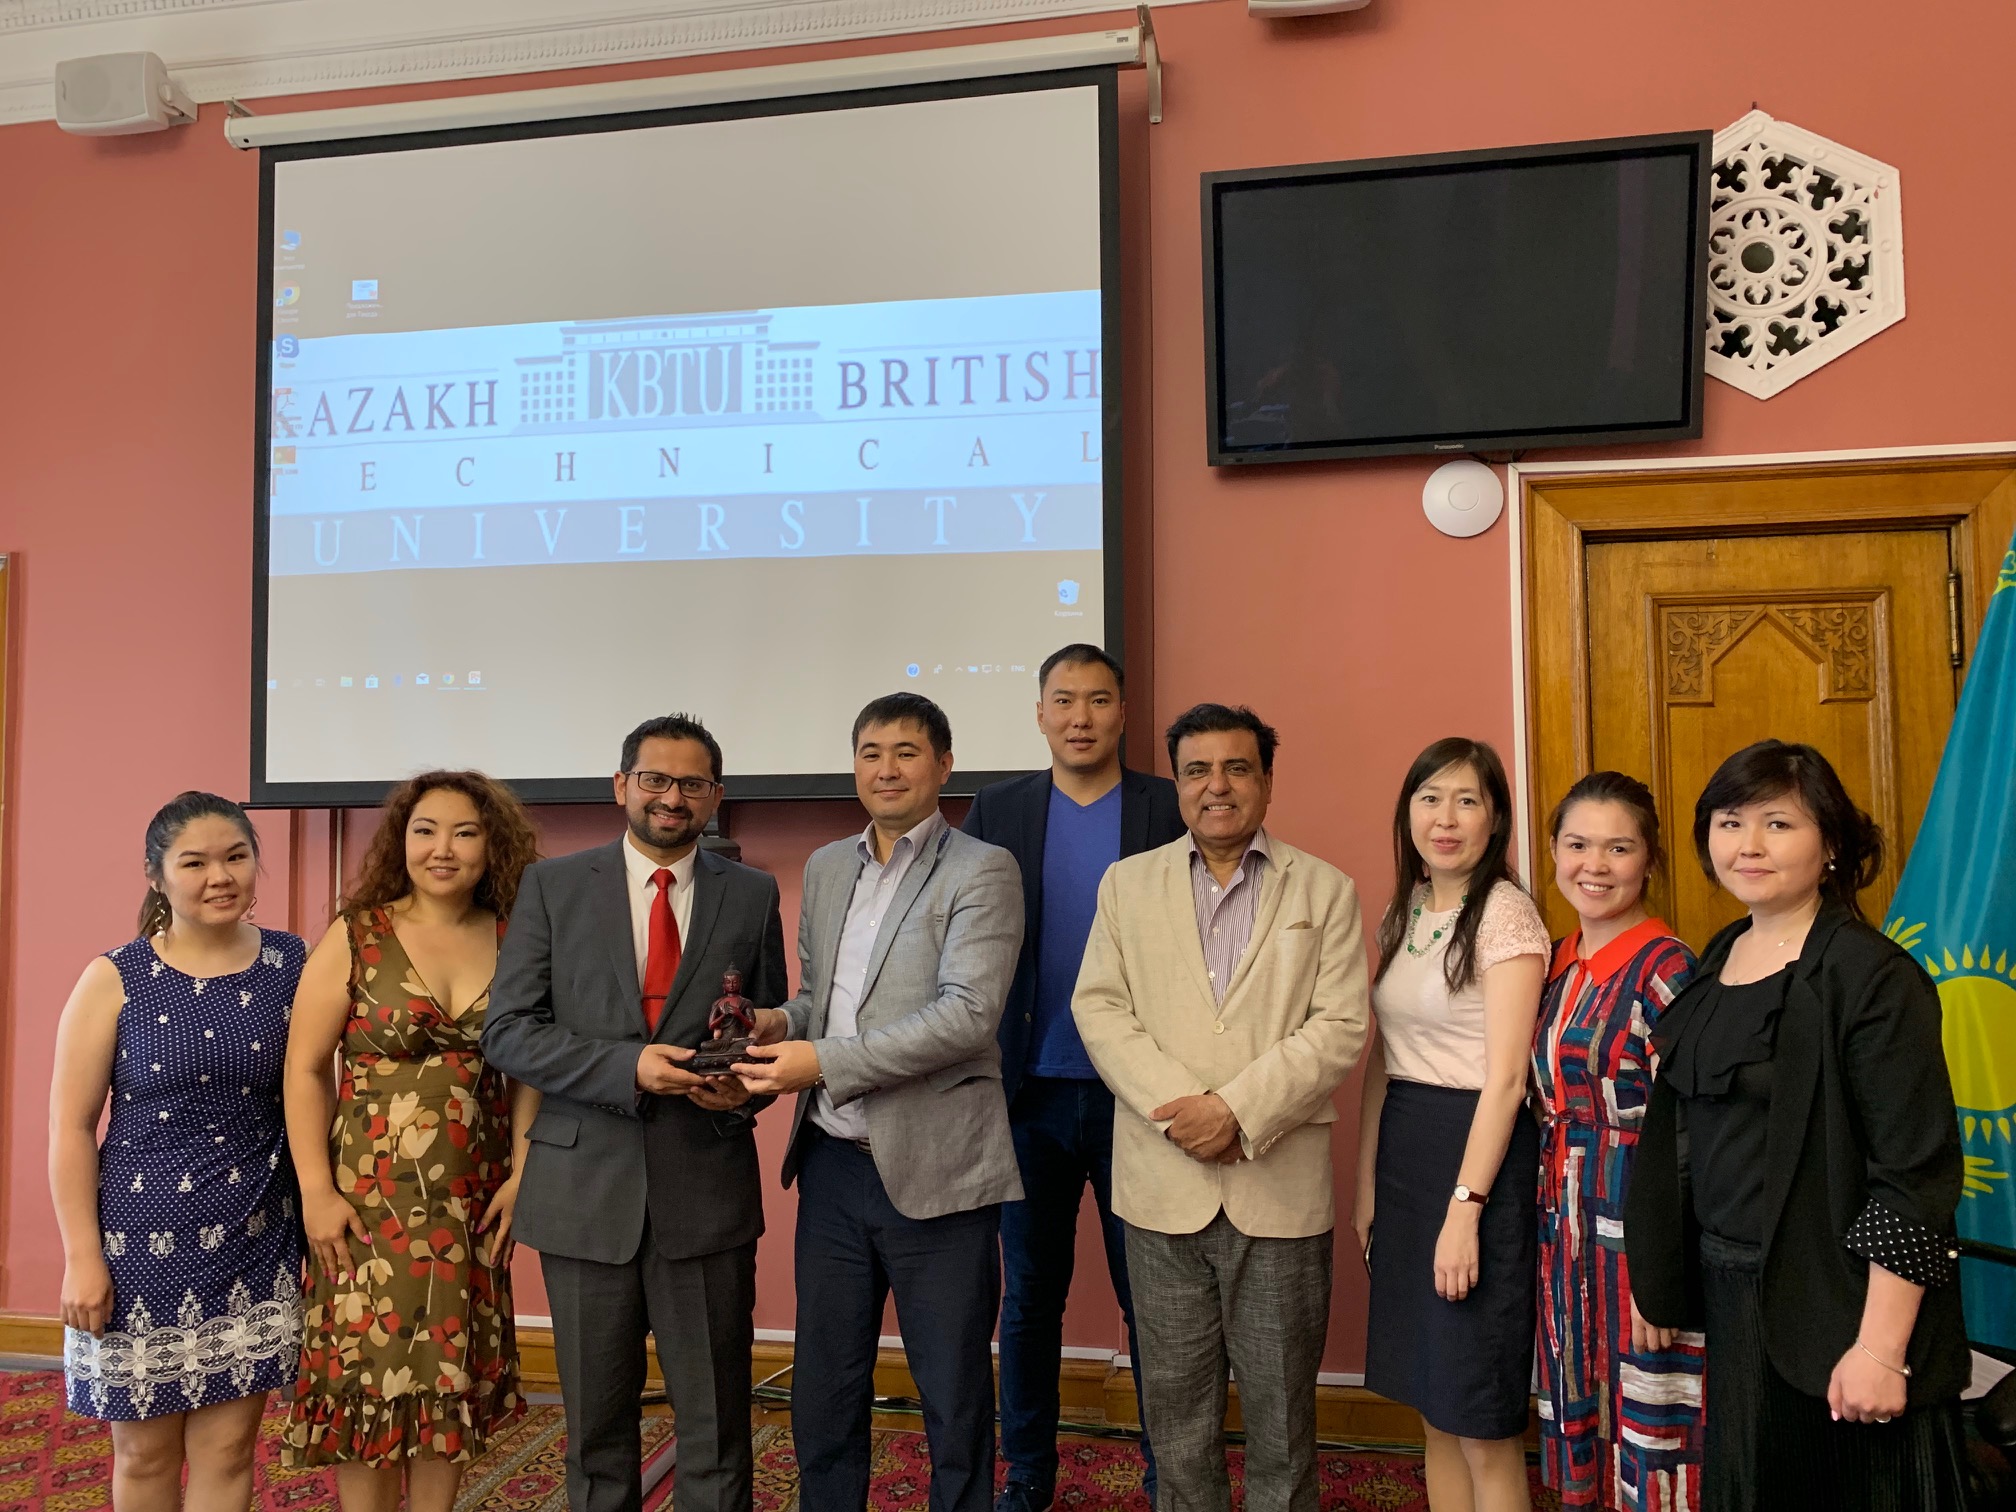 British College, Kathmandu signed MoU with Kazakh British Technical University